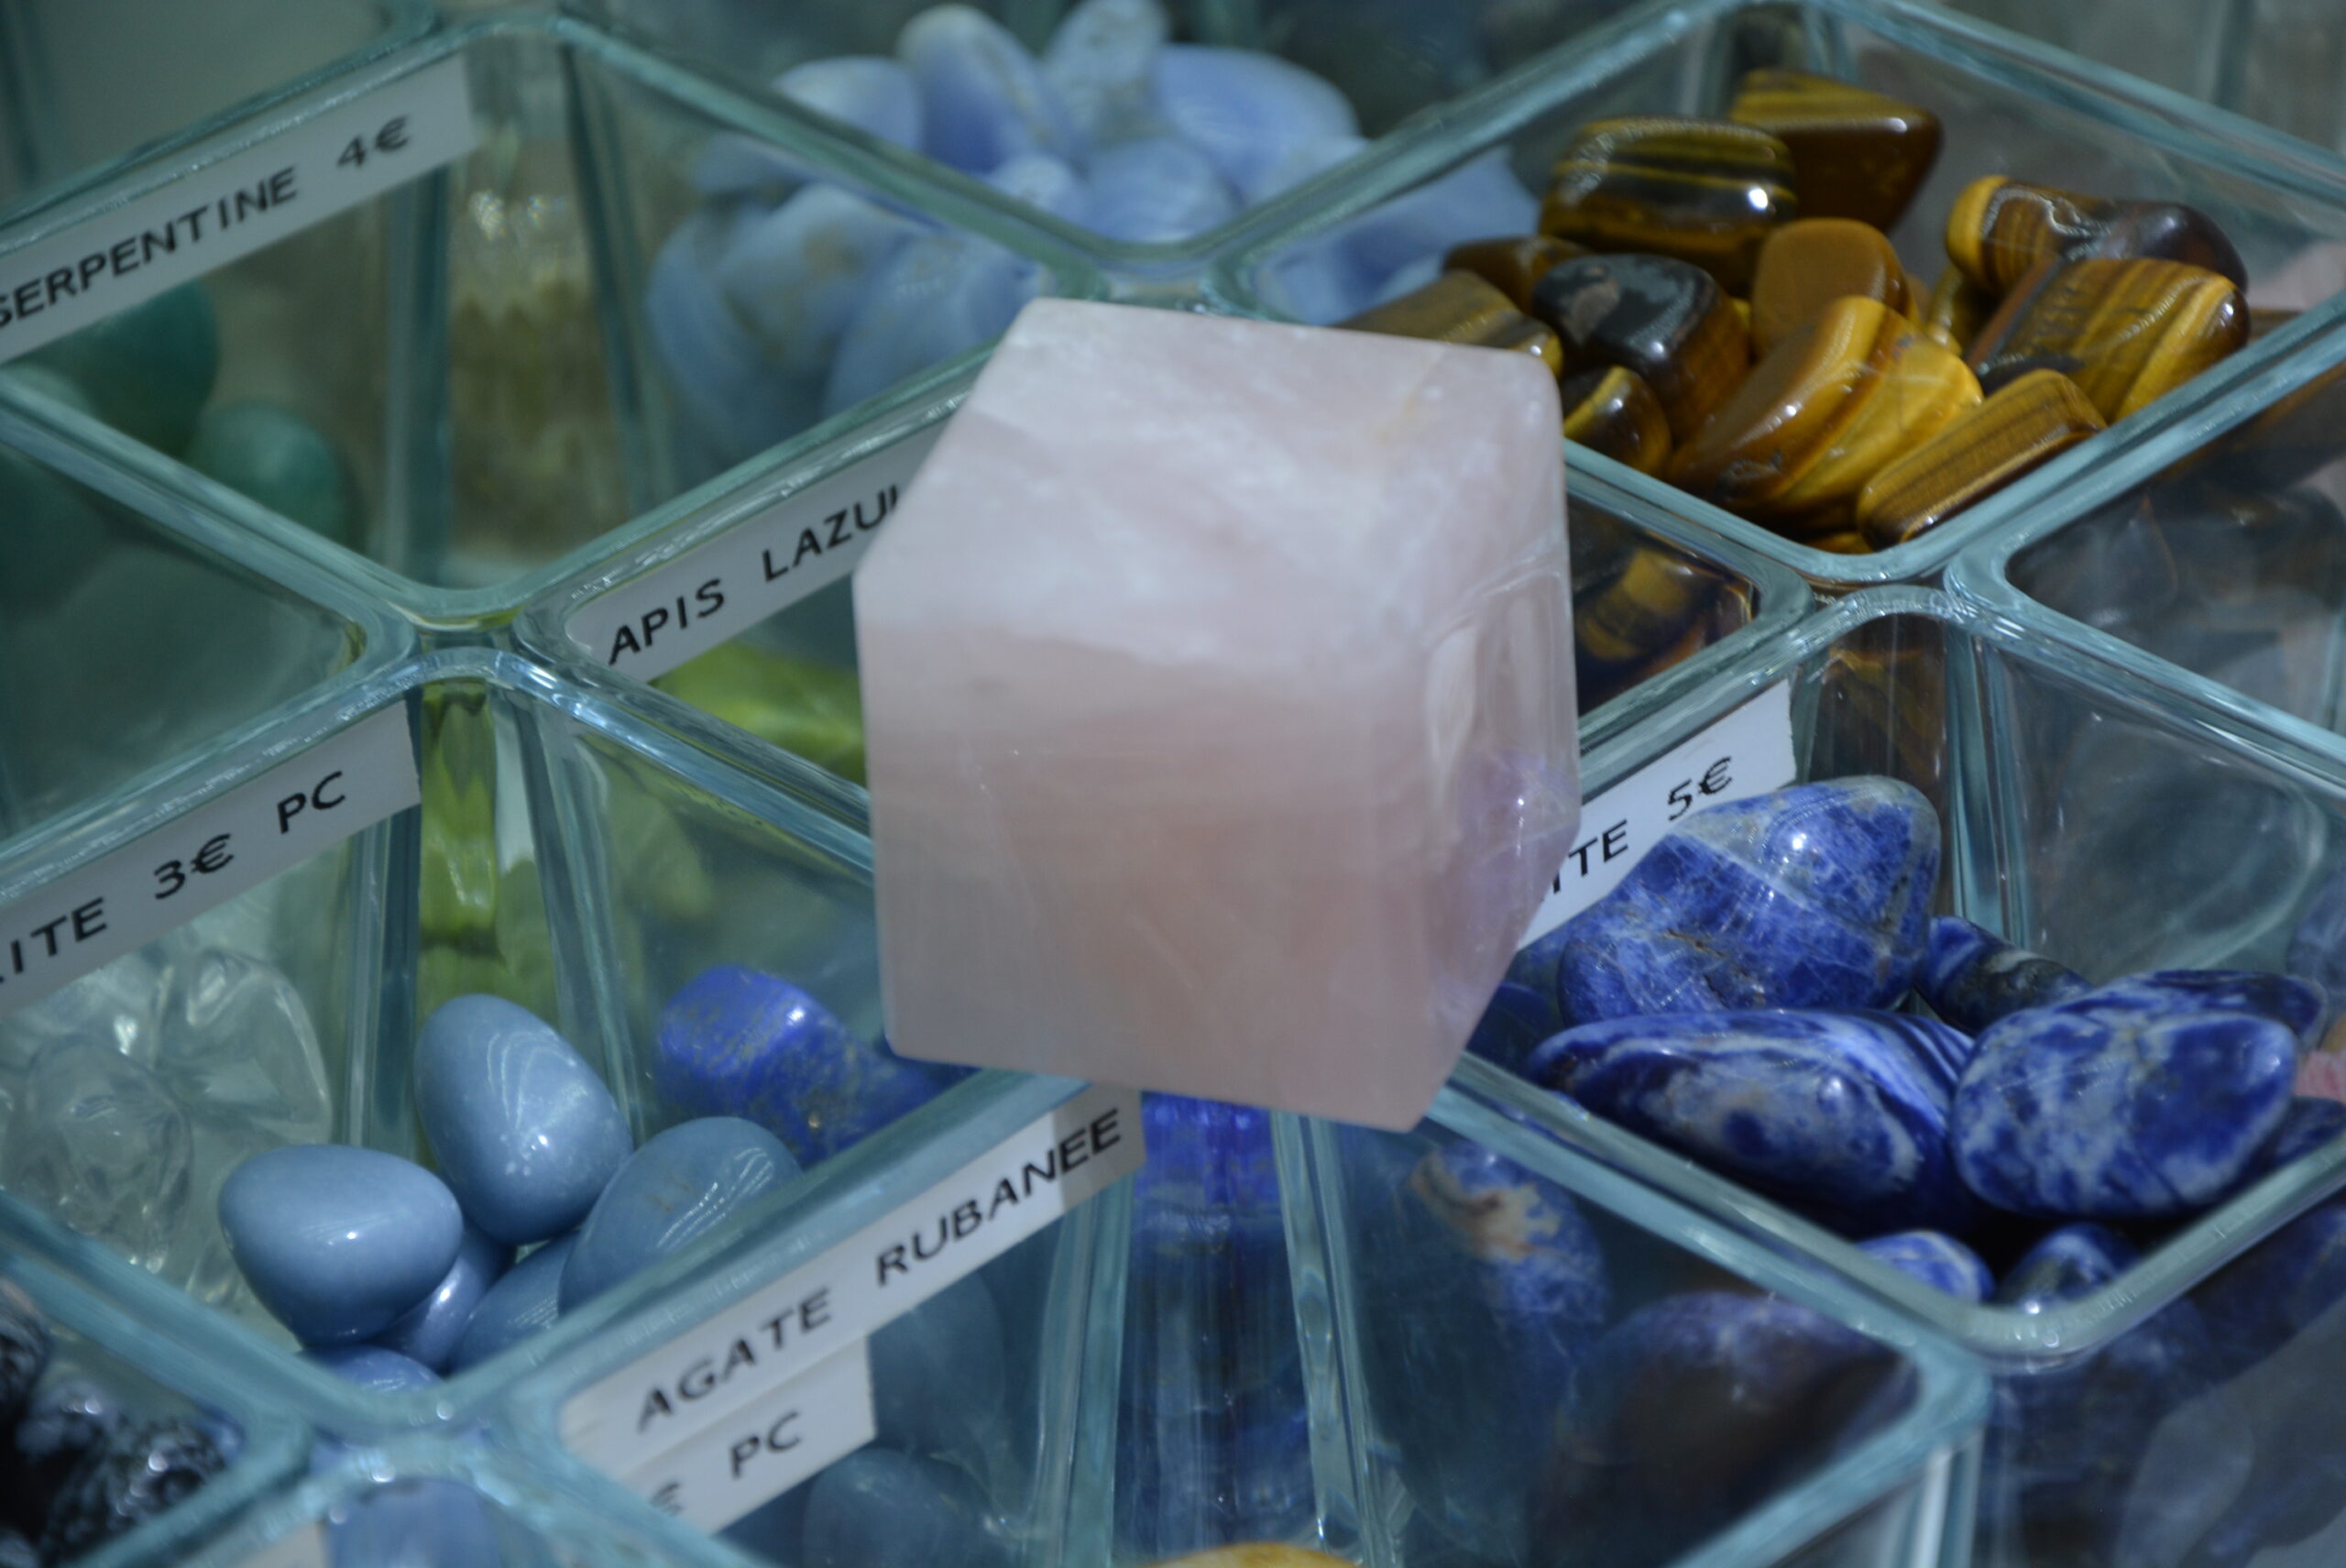 Cube quartz rose